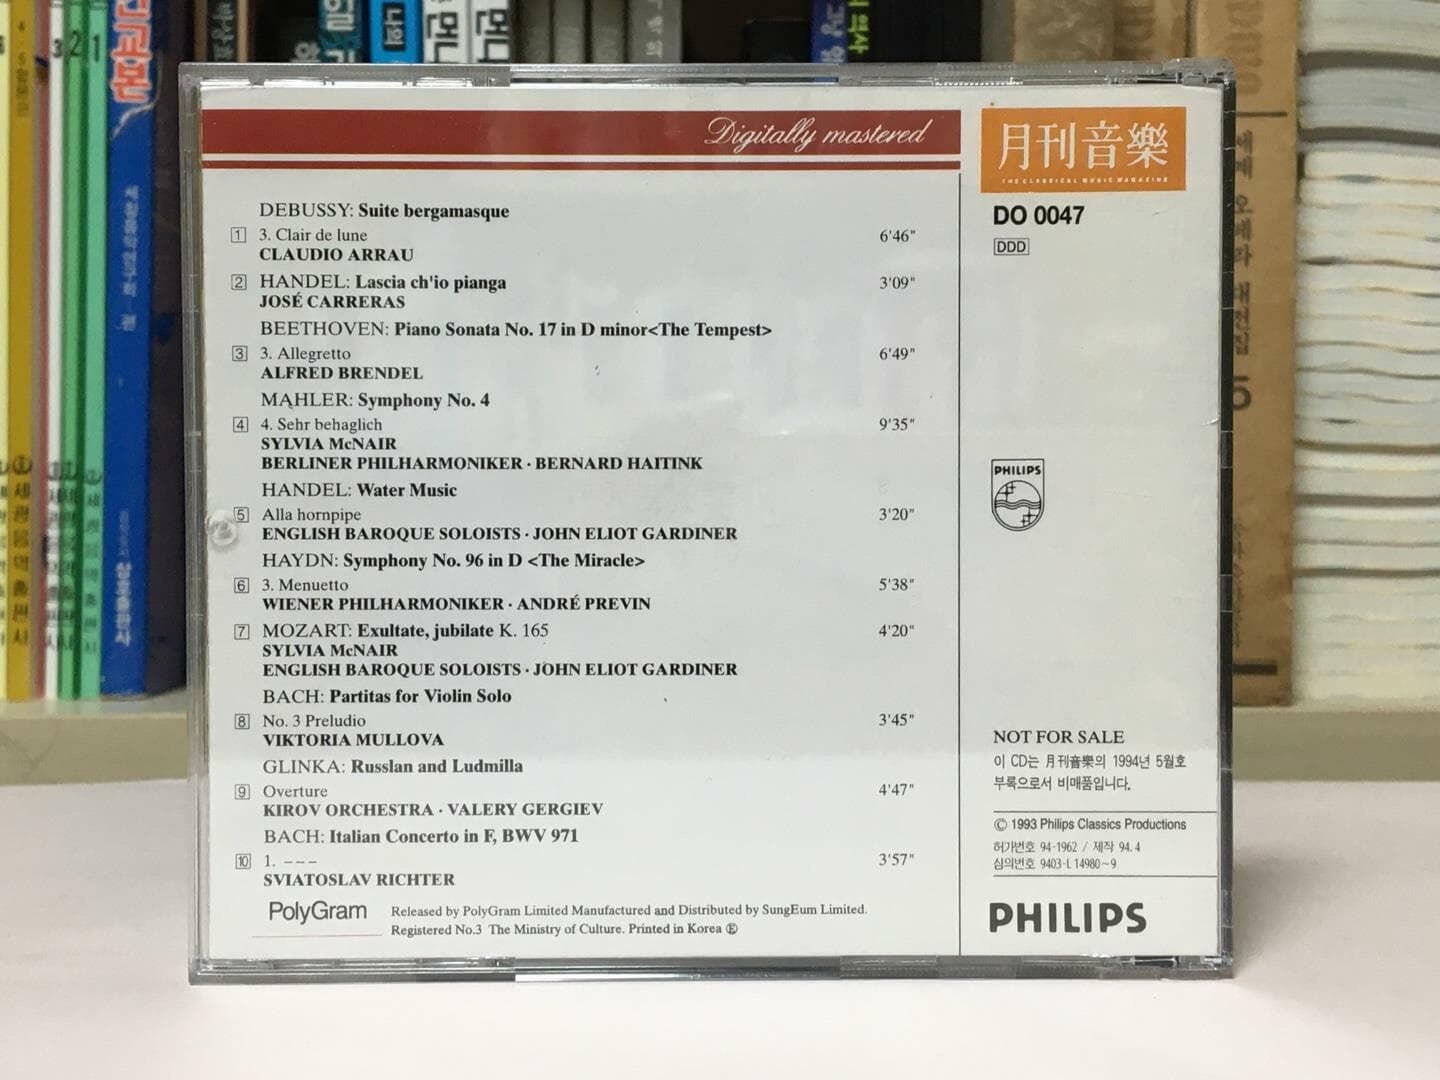 필립스 클래식 음반 컴필레이션 - 월간음악 1994년 5월호 부록 / 상태 : 최상 (설명과 사진 참고)